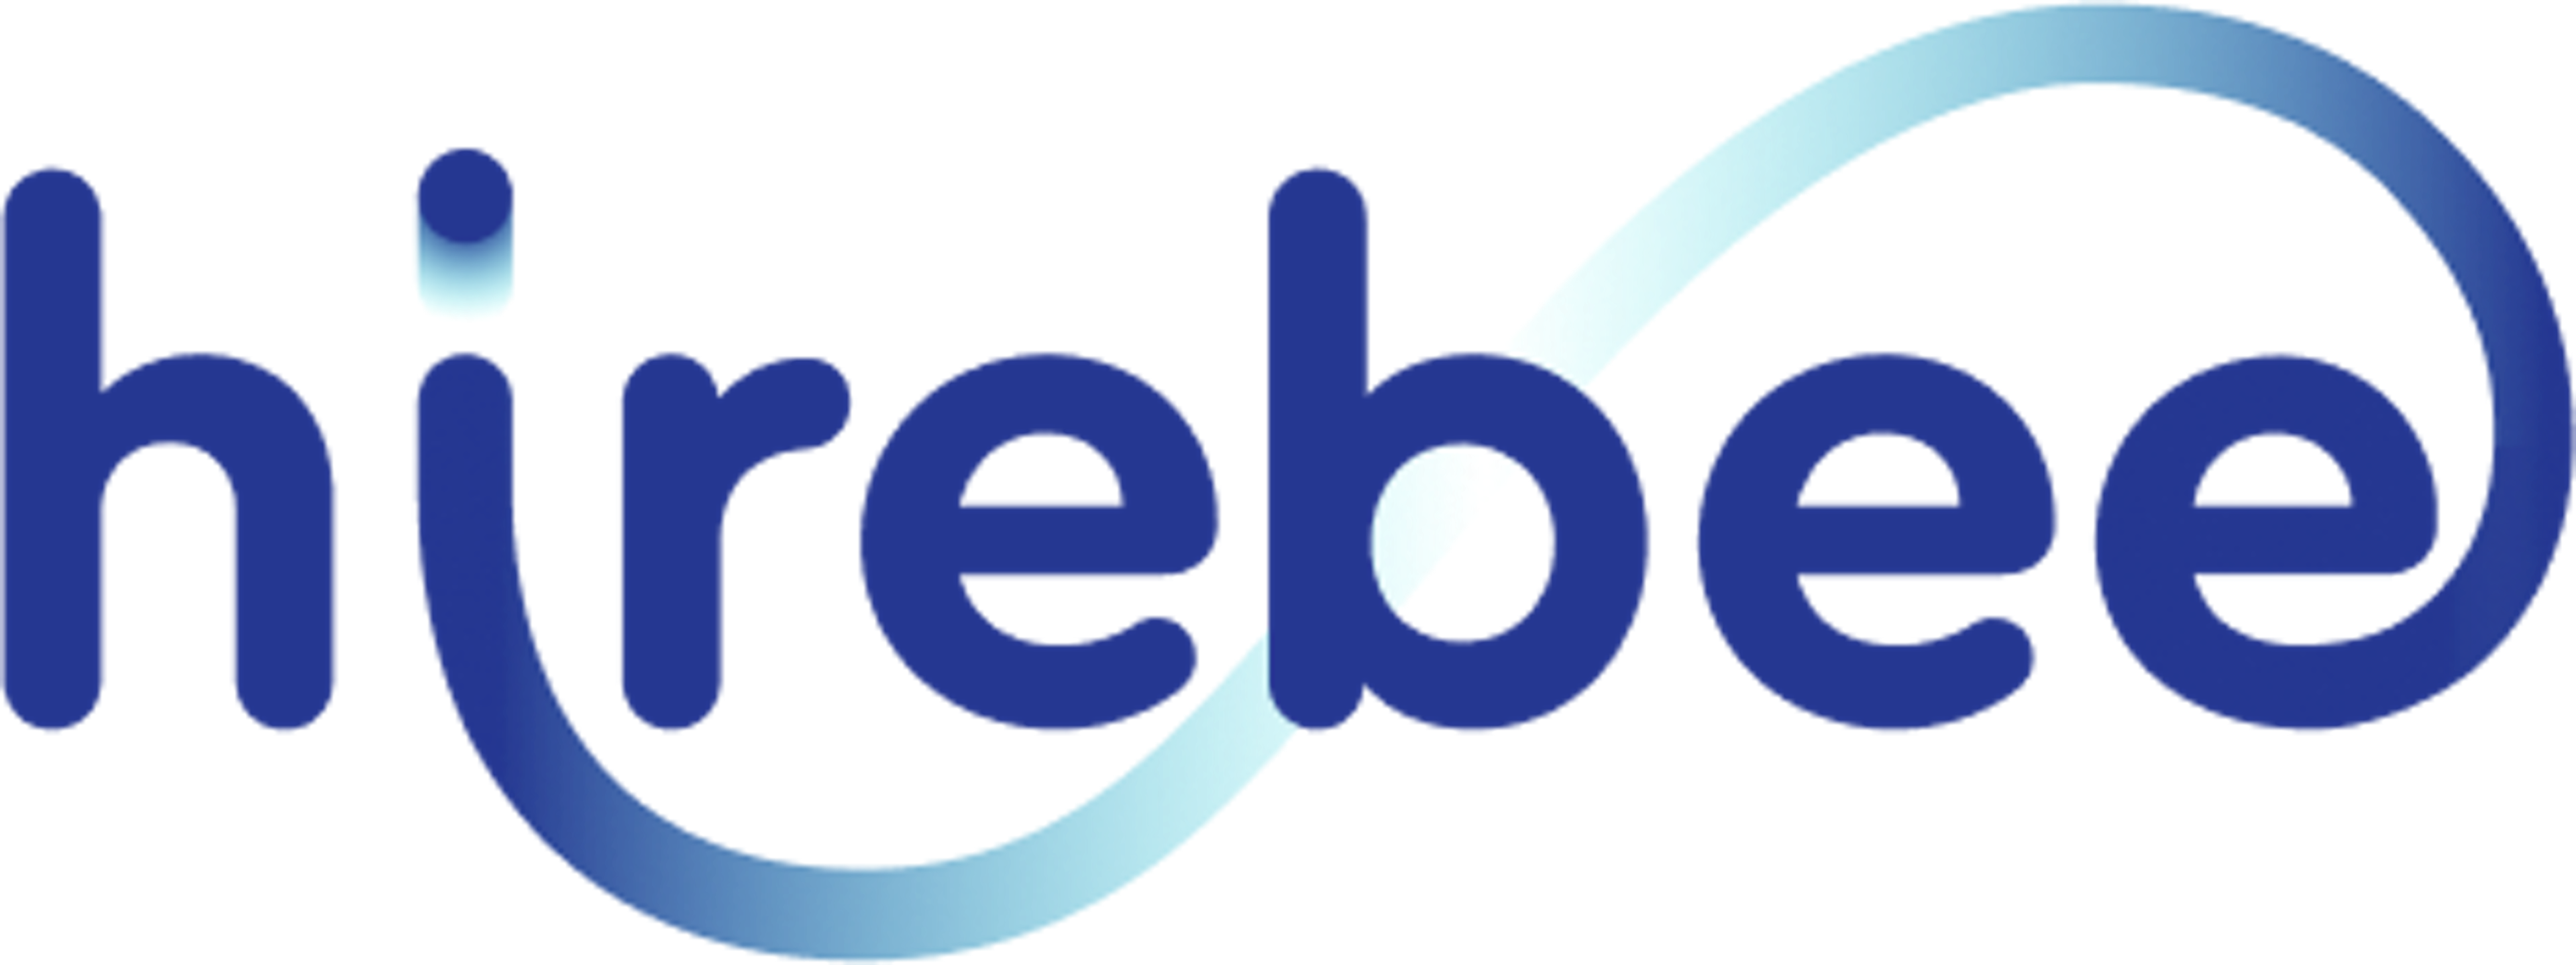 HireBee Logo